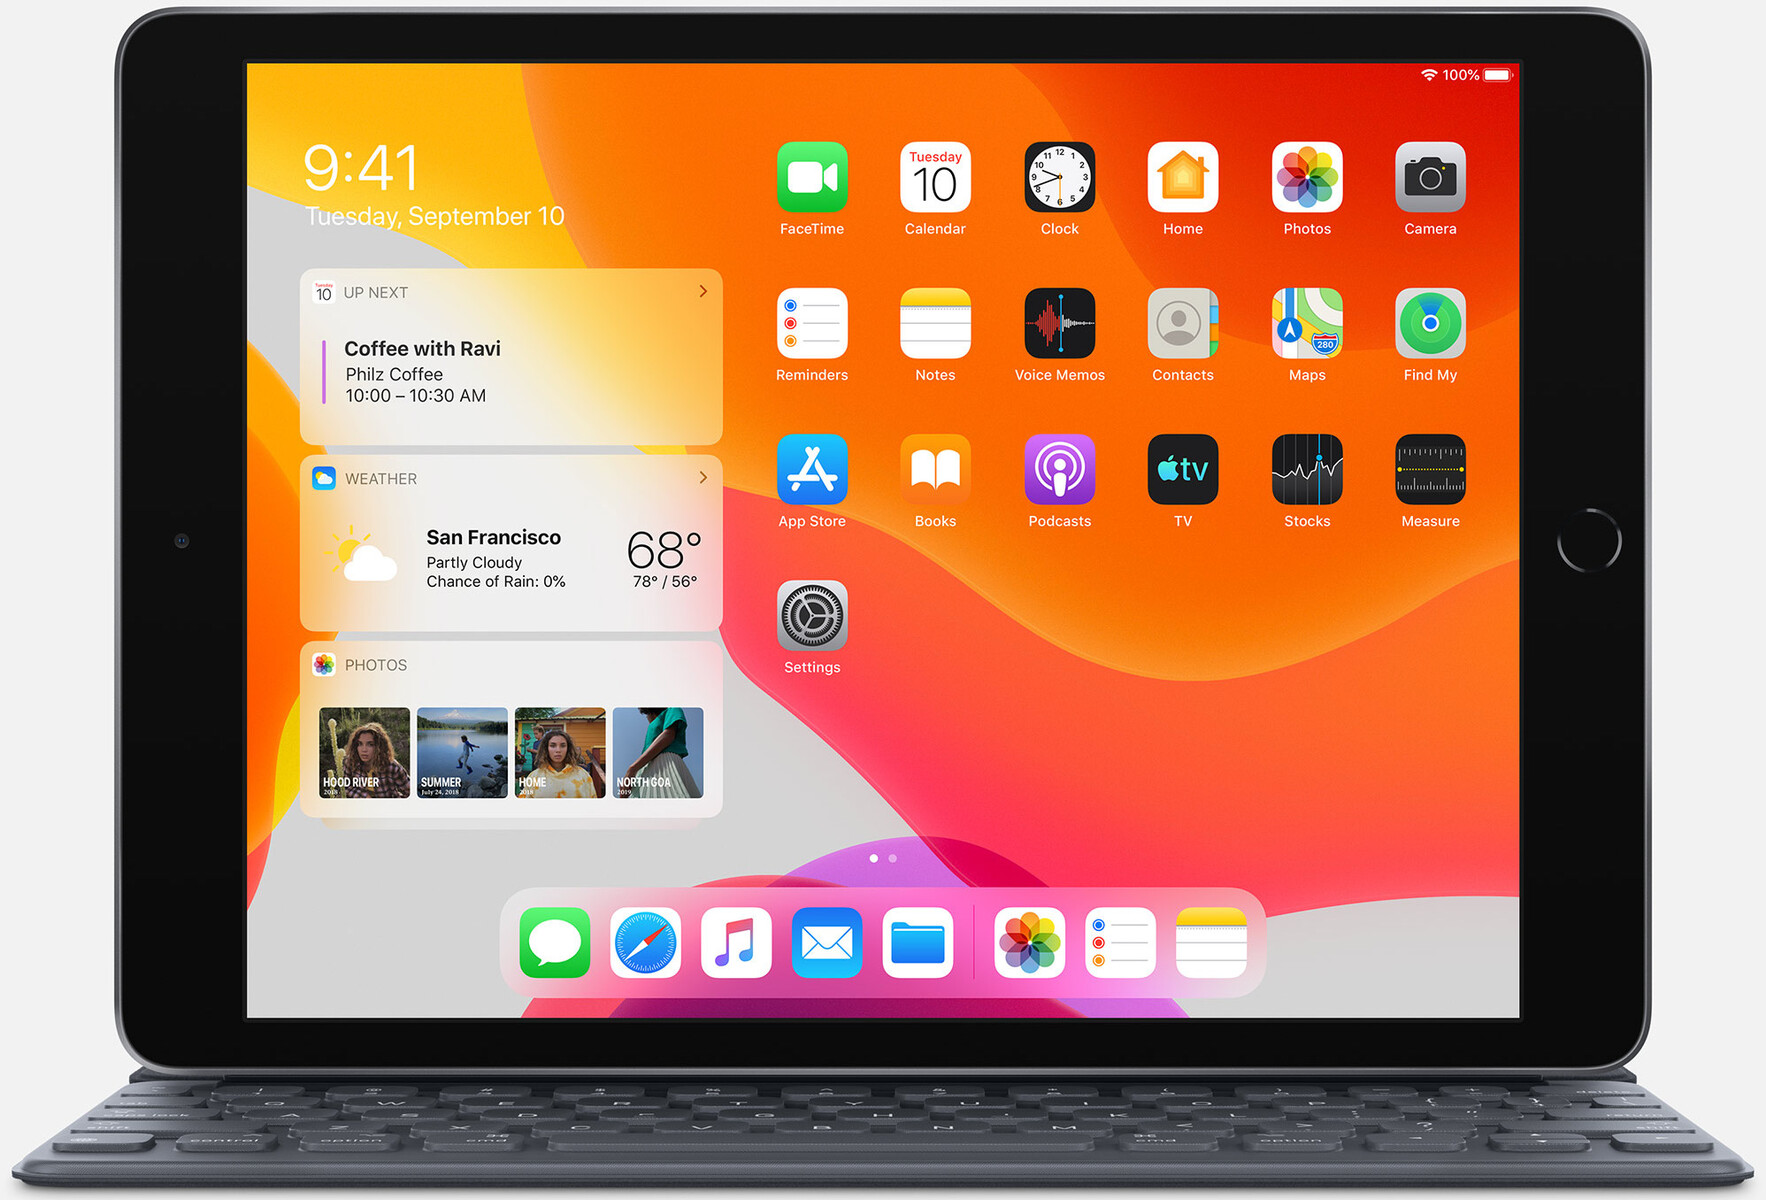 Đánh giá Apple IPad 7 2019: Thiết kế đẹp, camera chất lượng và đặc biệt là màn hình lớn cùng tính năng tiện dụng. IPad 7 2019 sẽ là một lựa chọn hoàn hảo với những người đam mê vẽ tranh.